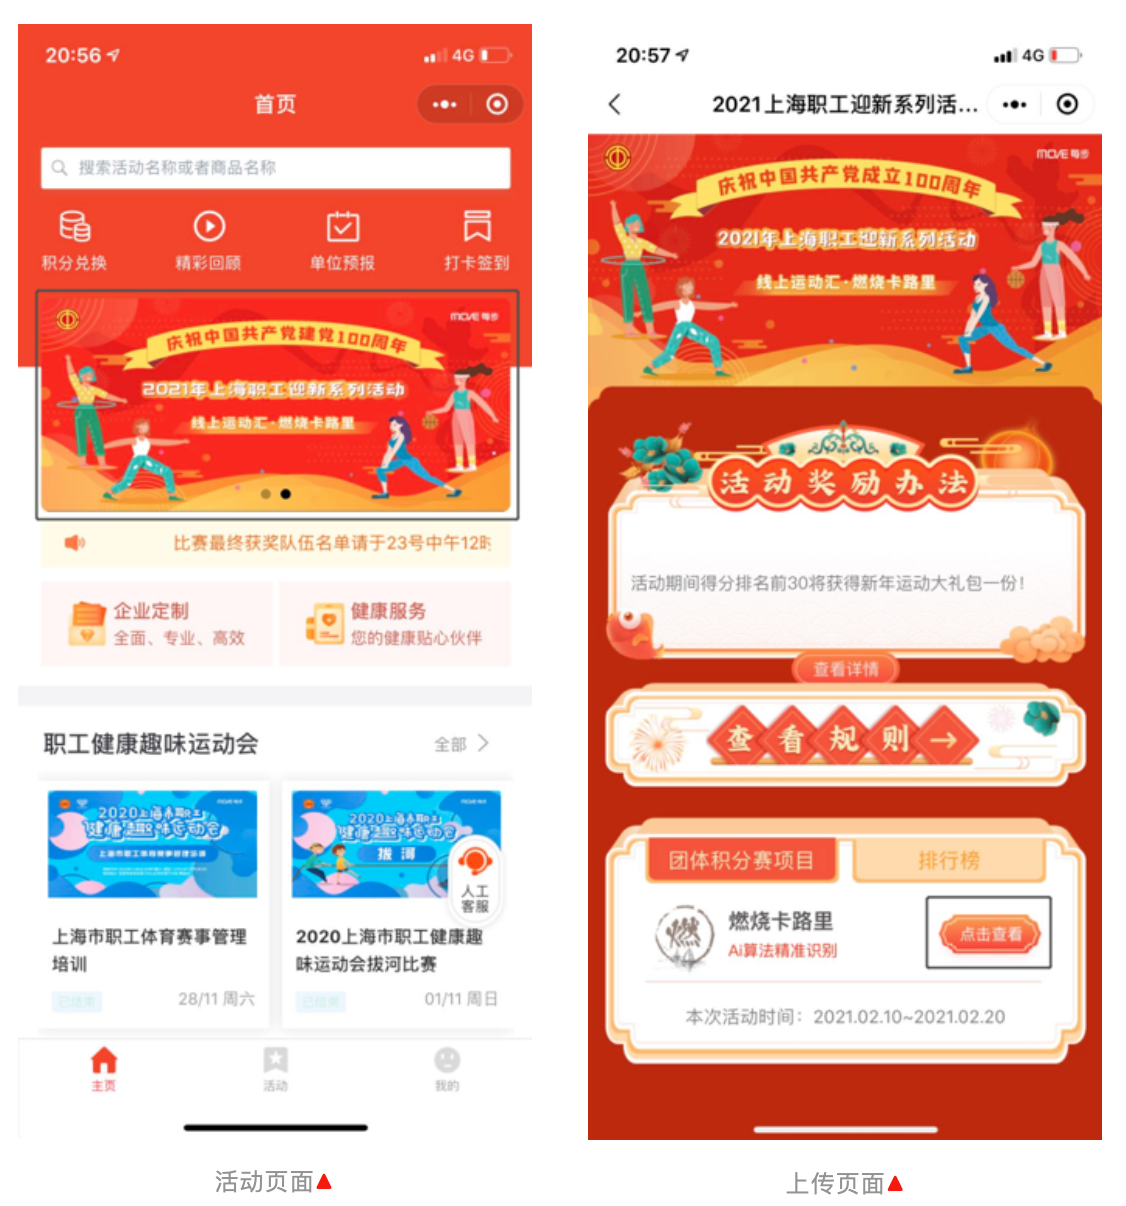 2021上海职工迎新系列趣味主题活动线上运动会—燃烧卡路里等你来打卡！ 资讯动态 第2张